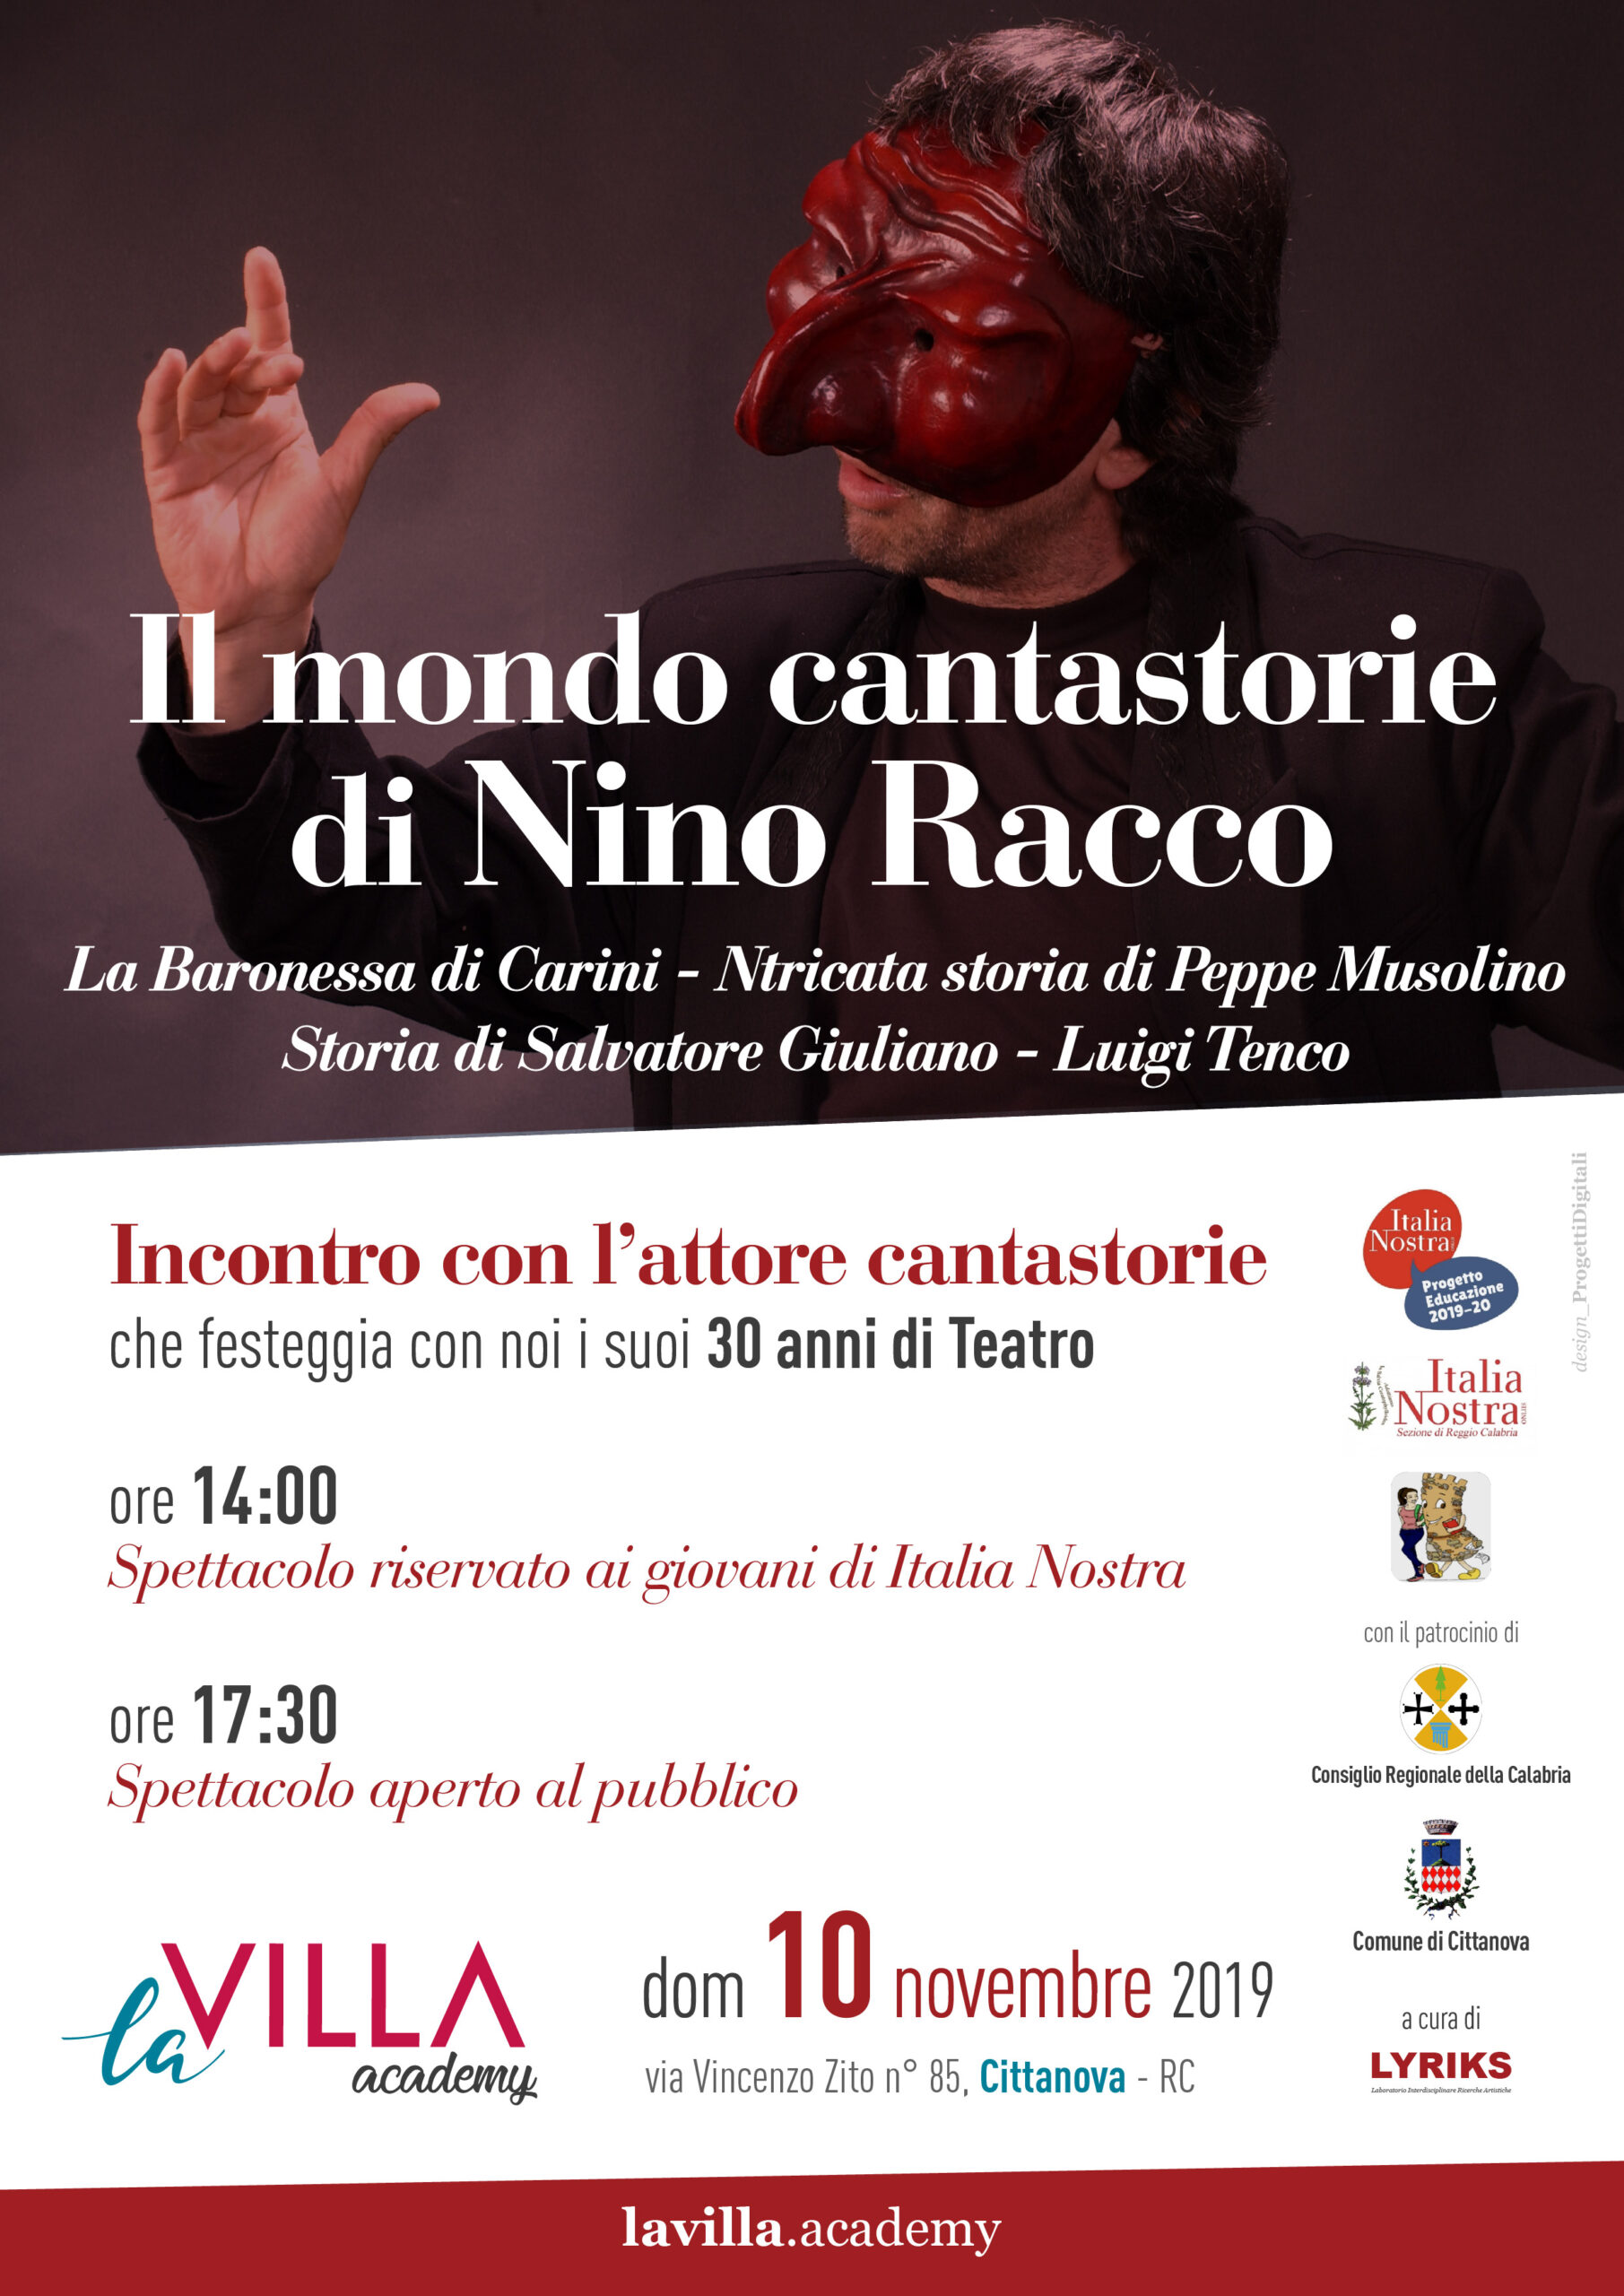 Il mondo cantastorie di Nino Racco